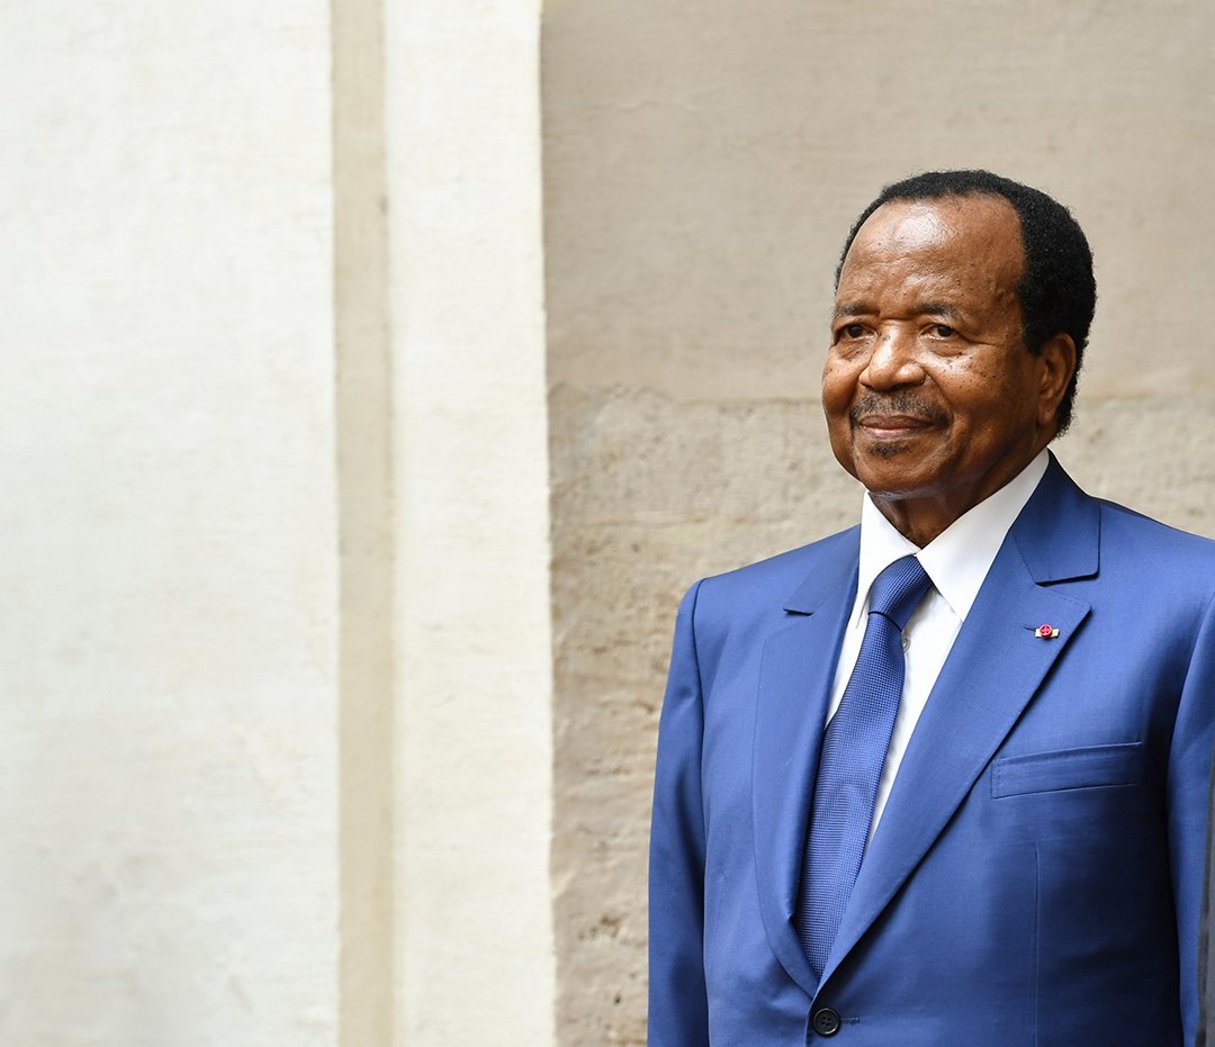 Le président camerounais en mars 2017, à Rome © ANDREAS SOLARO/AFP